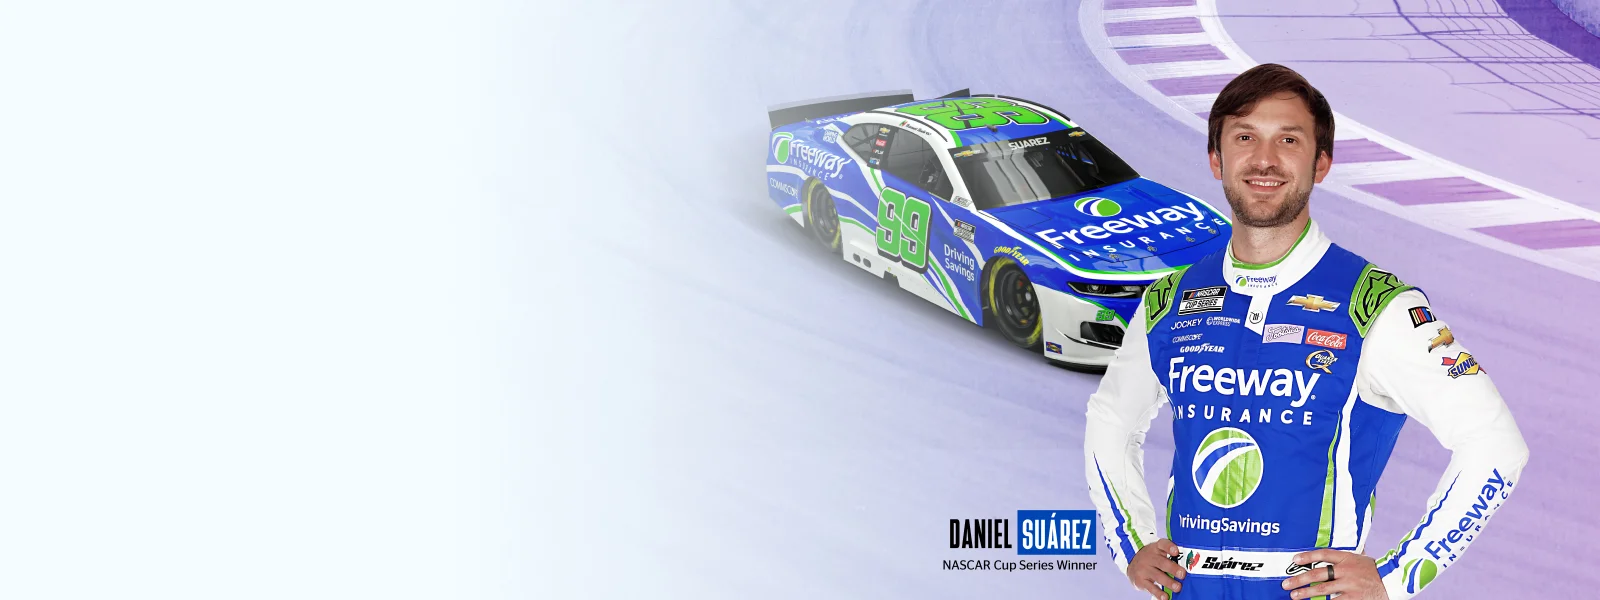 Daniel Suarez standing in front of his NASCAR #99 racecar